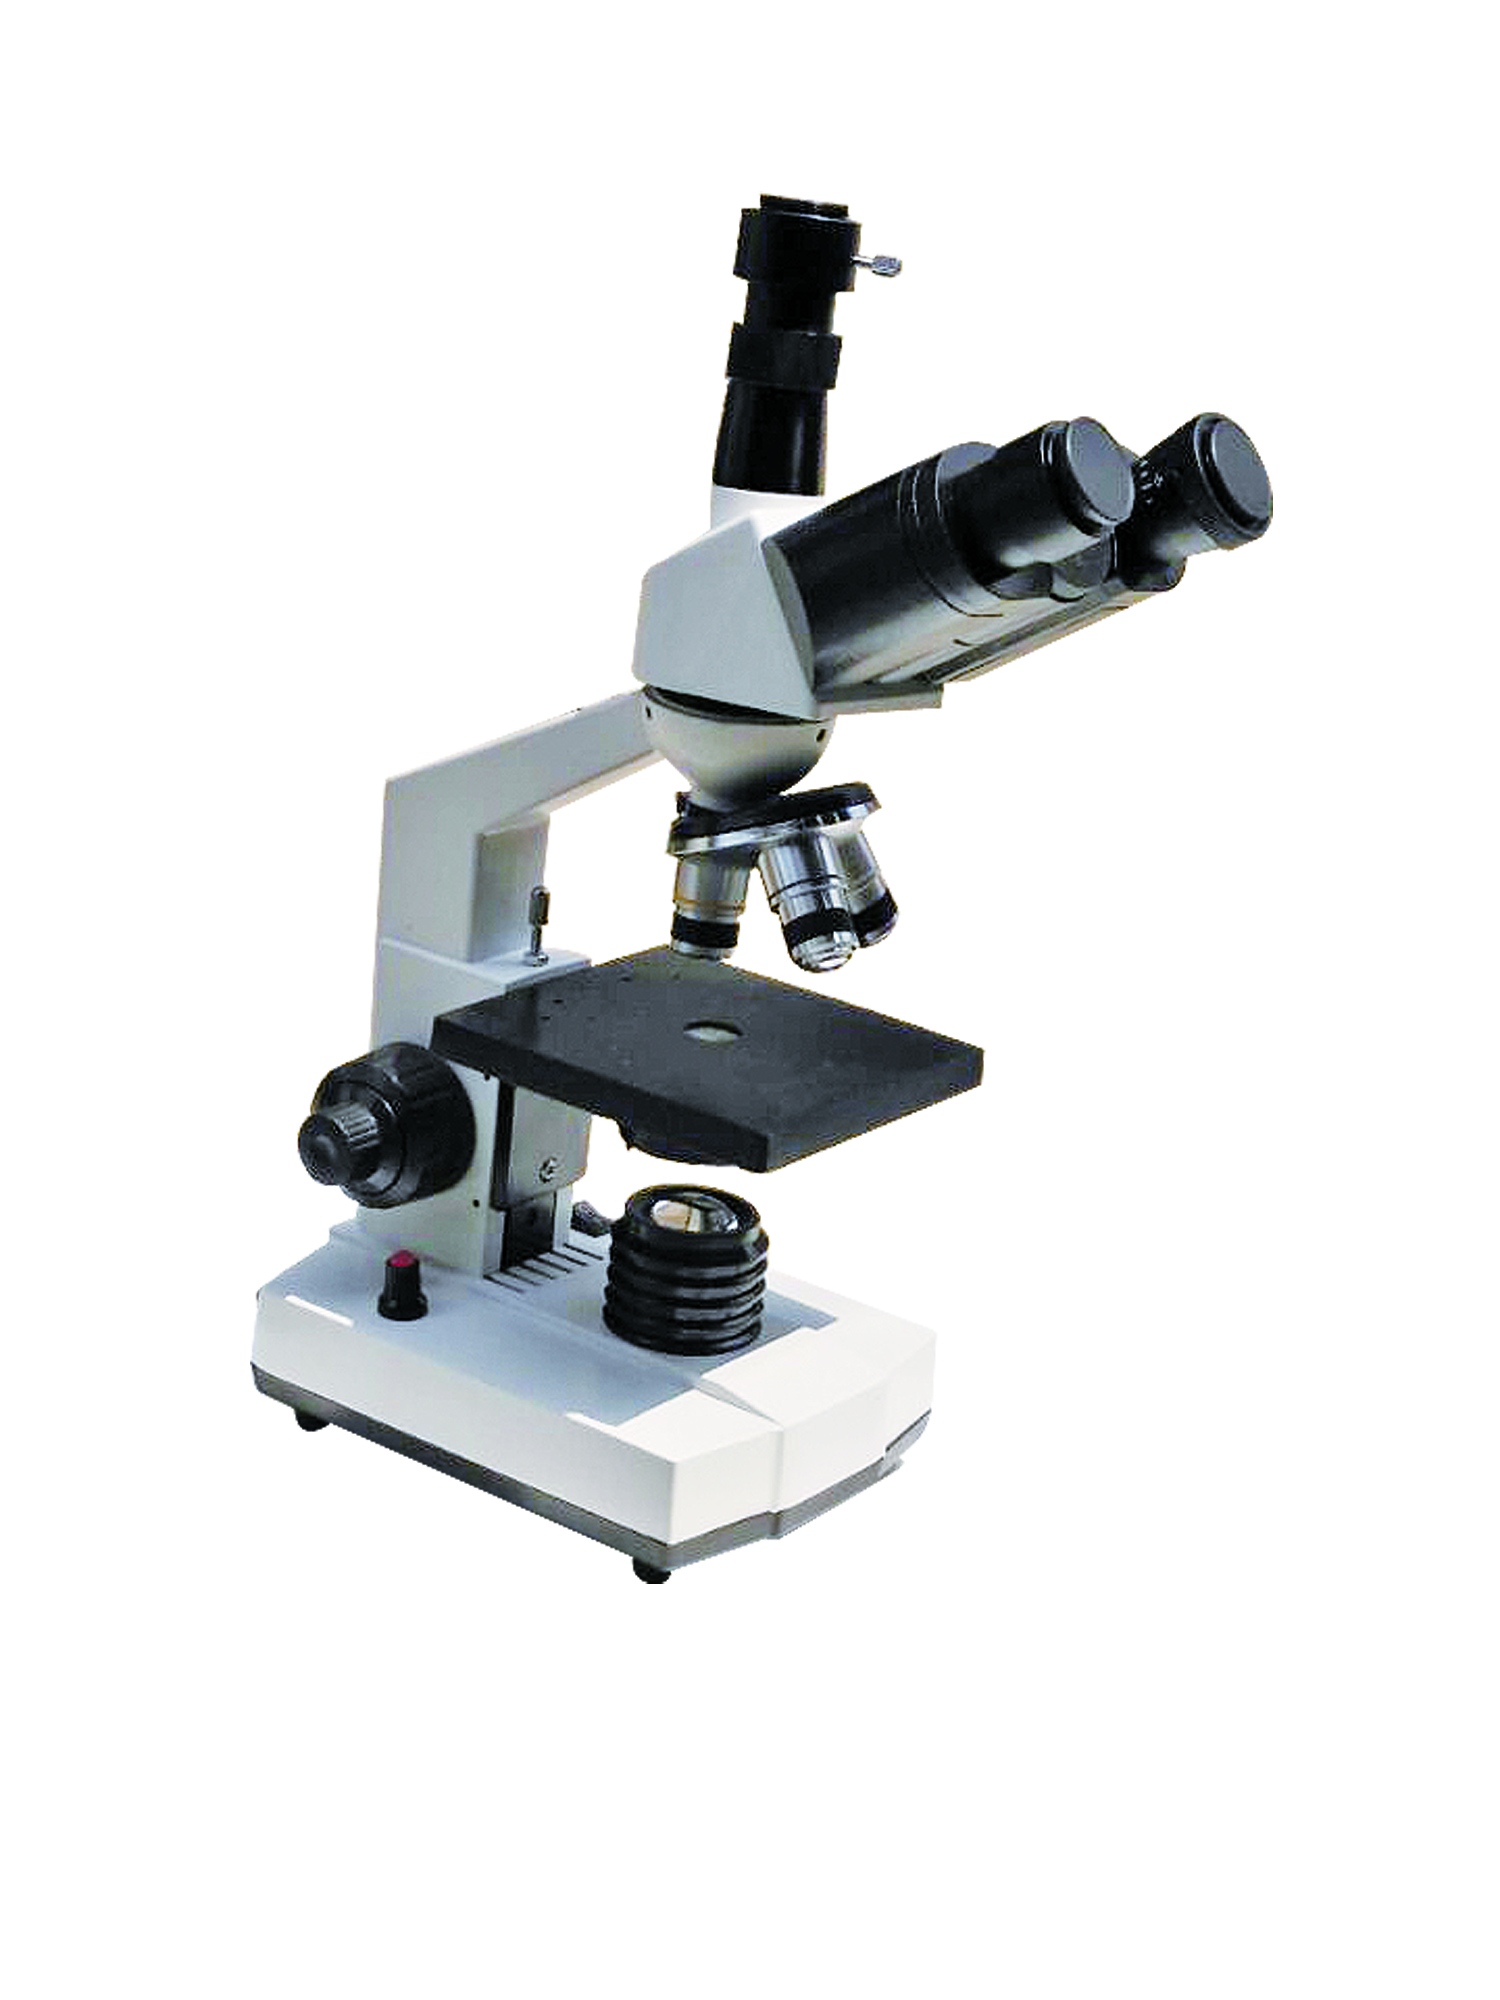 xsp-104b 光学显微镜 济南威诺1